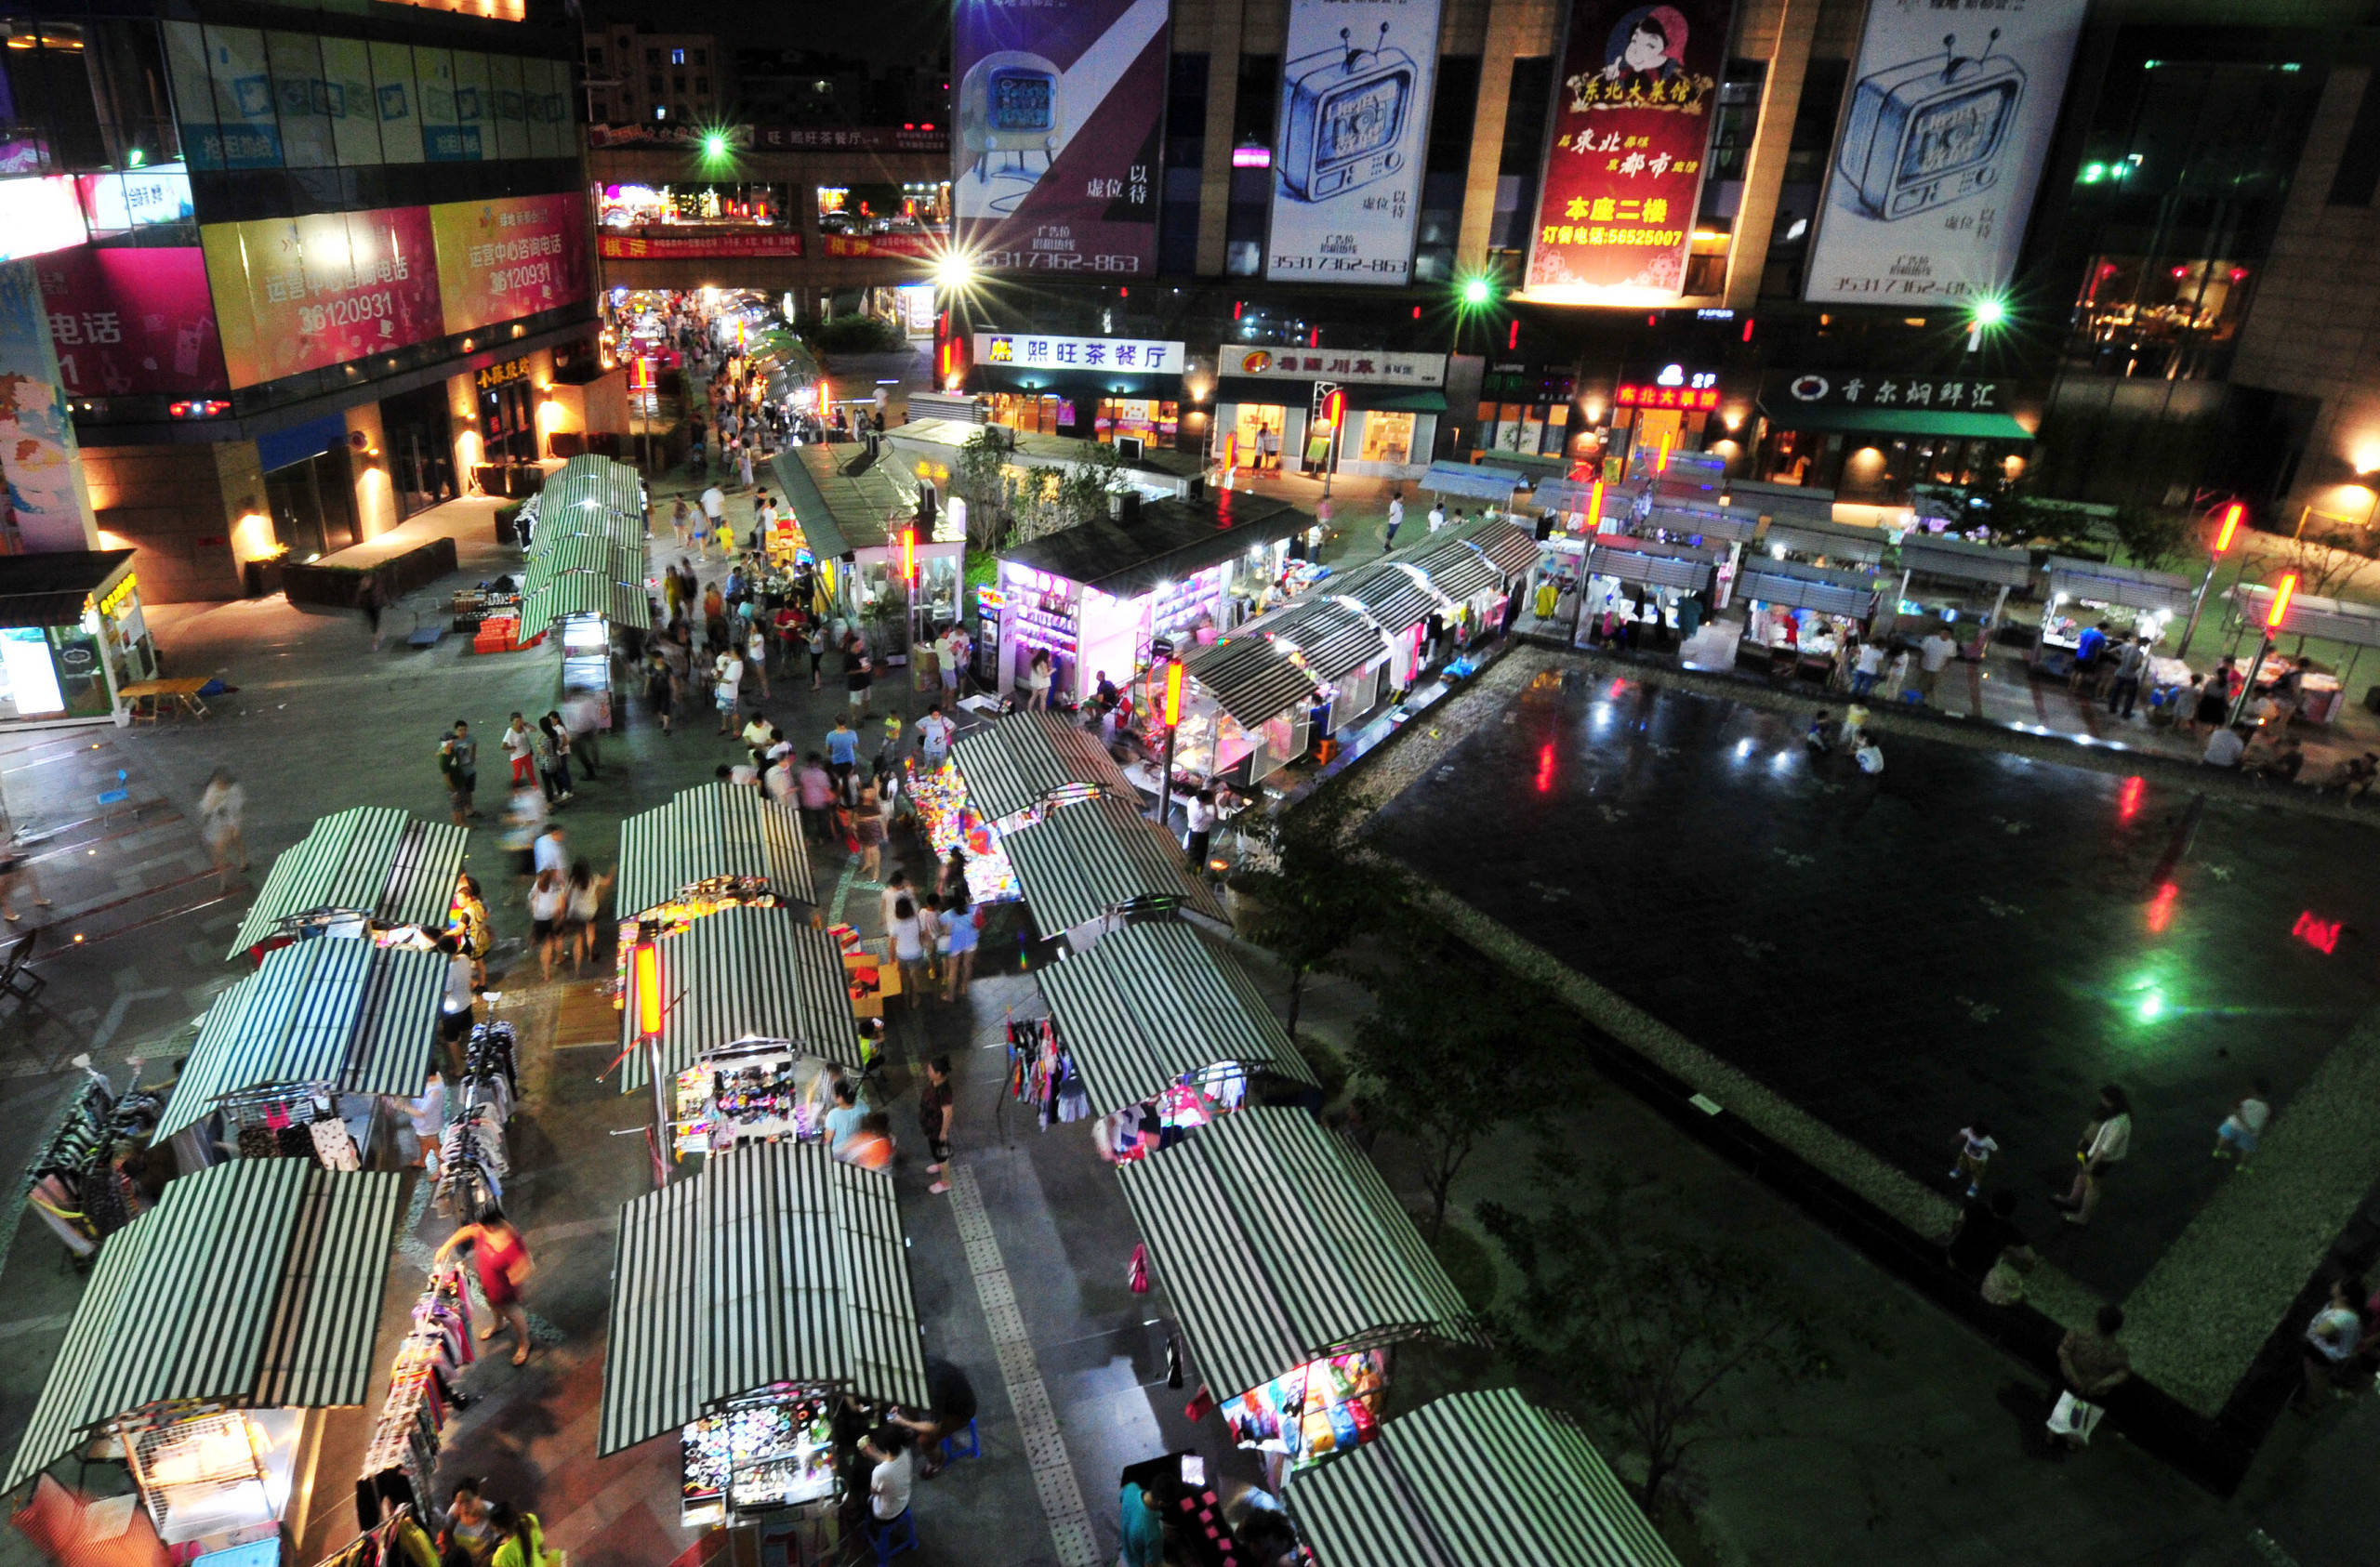 临汾路彭浦夜市是整治力度最大的夜市之一.